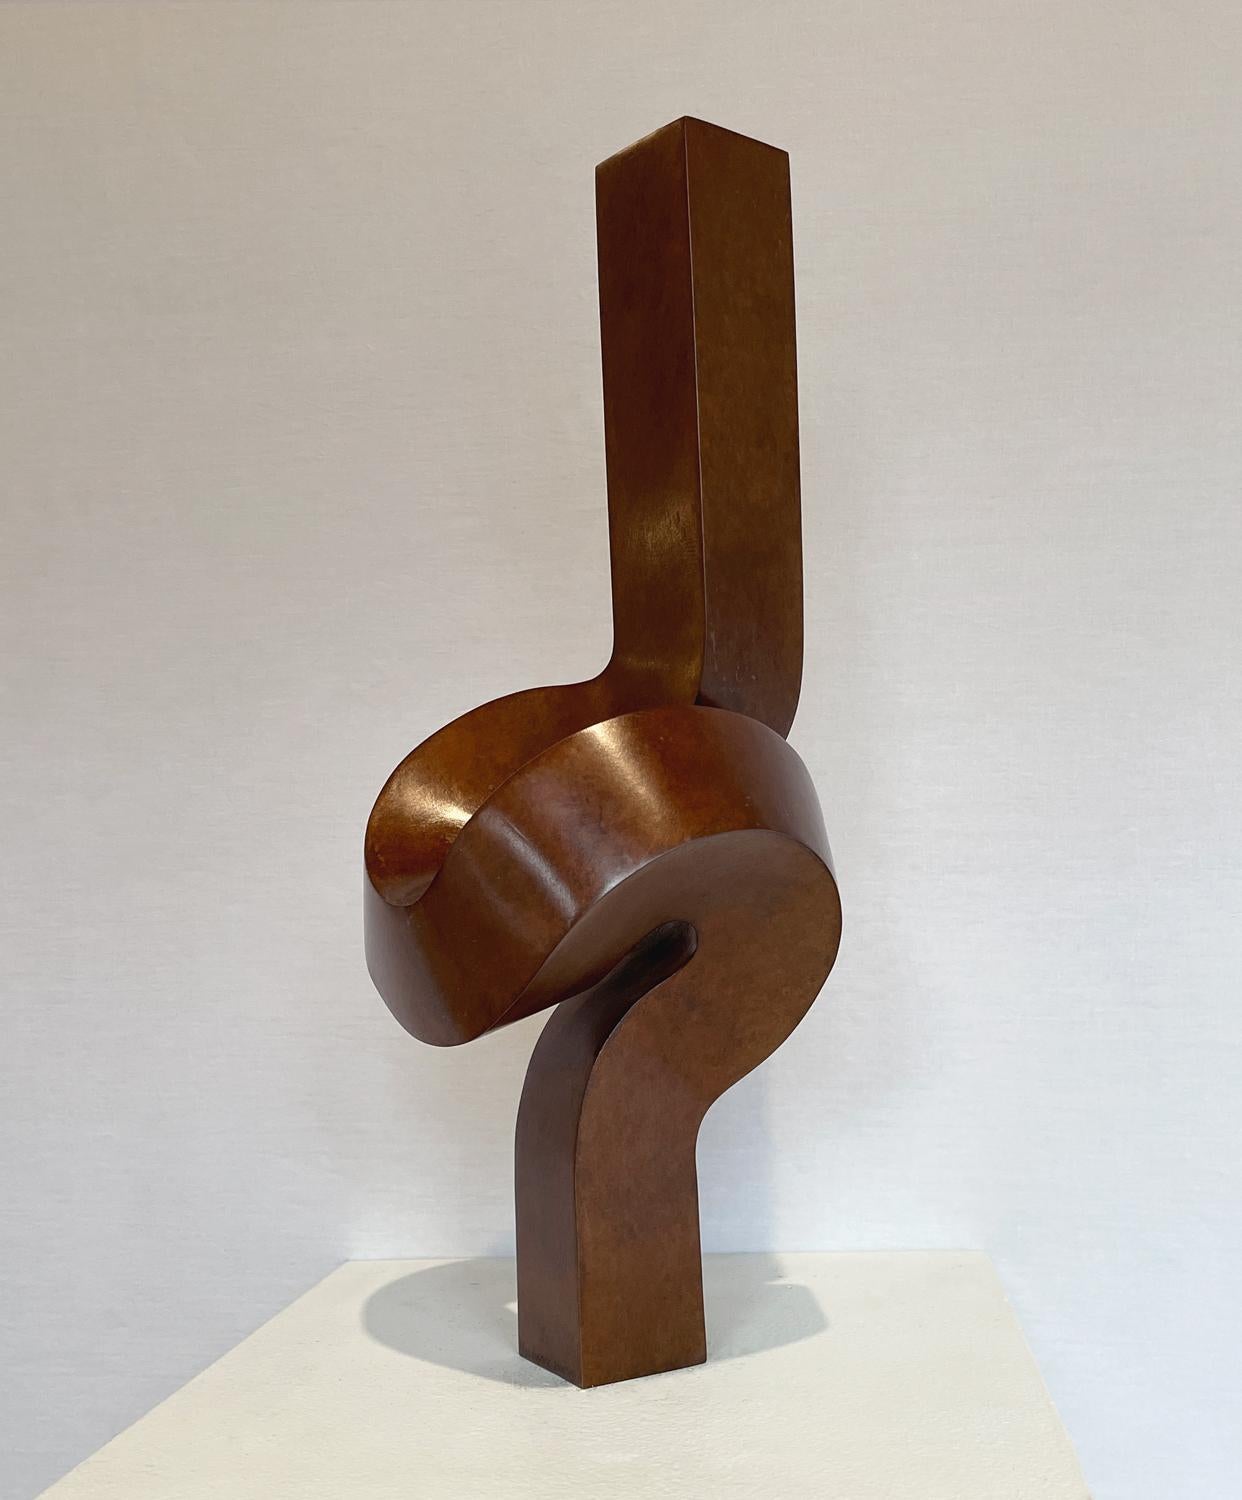 Minimalistische Bronzeskulptur „Upright“  – Sculpture von Clement Meadmore